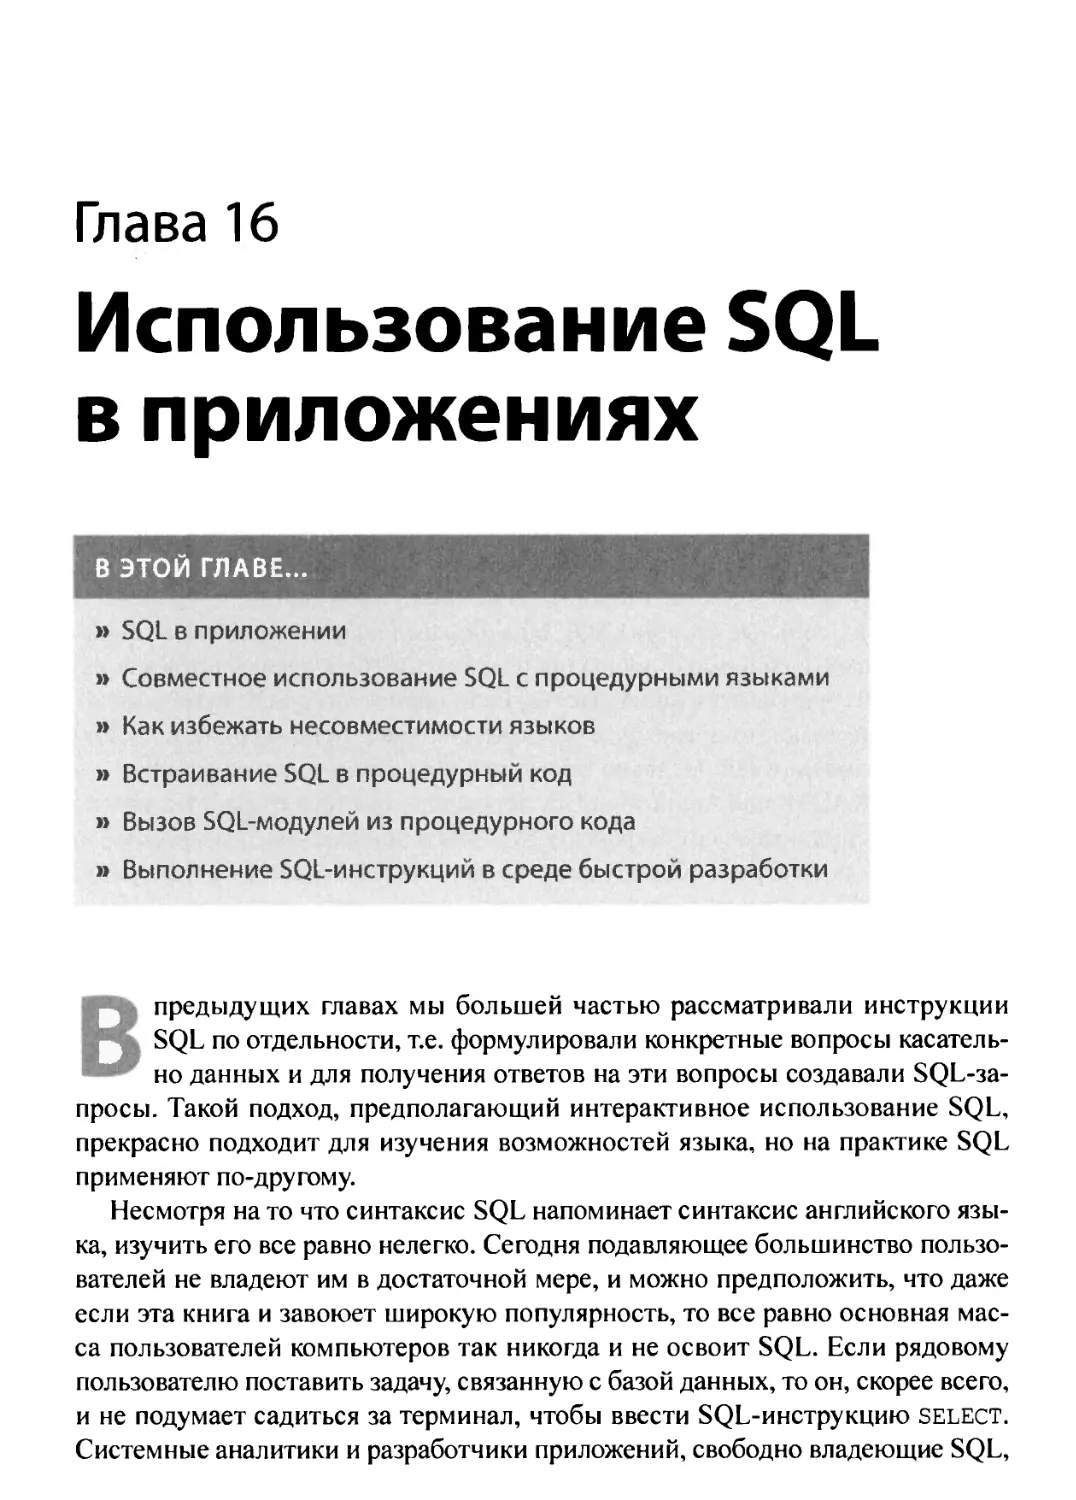 16. Использование SQL в приложениях